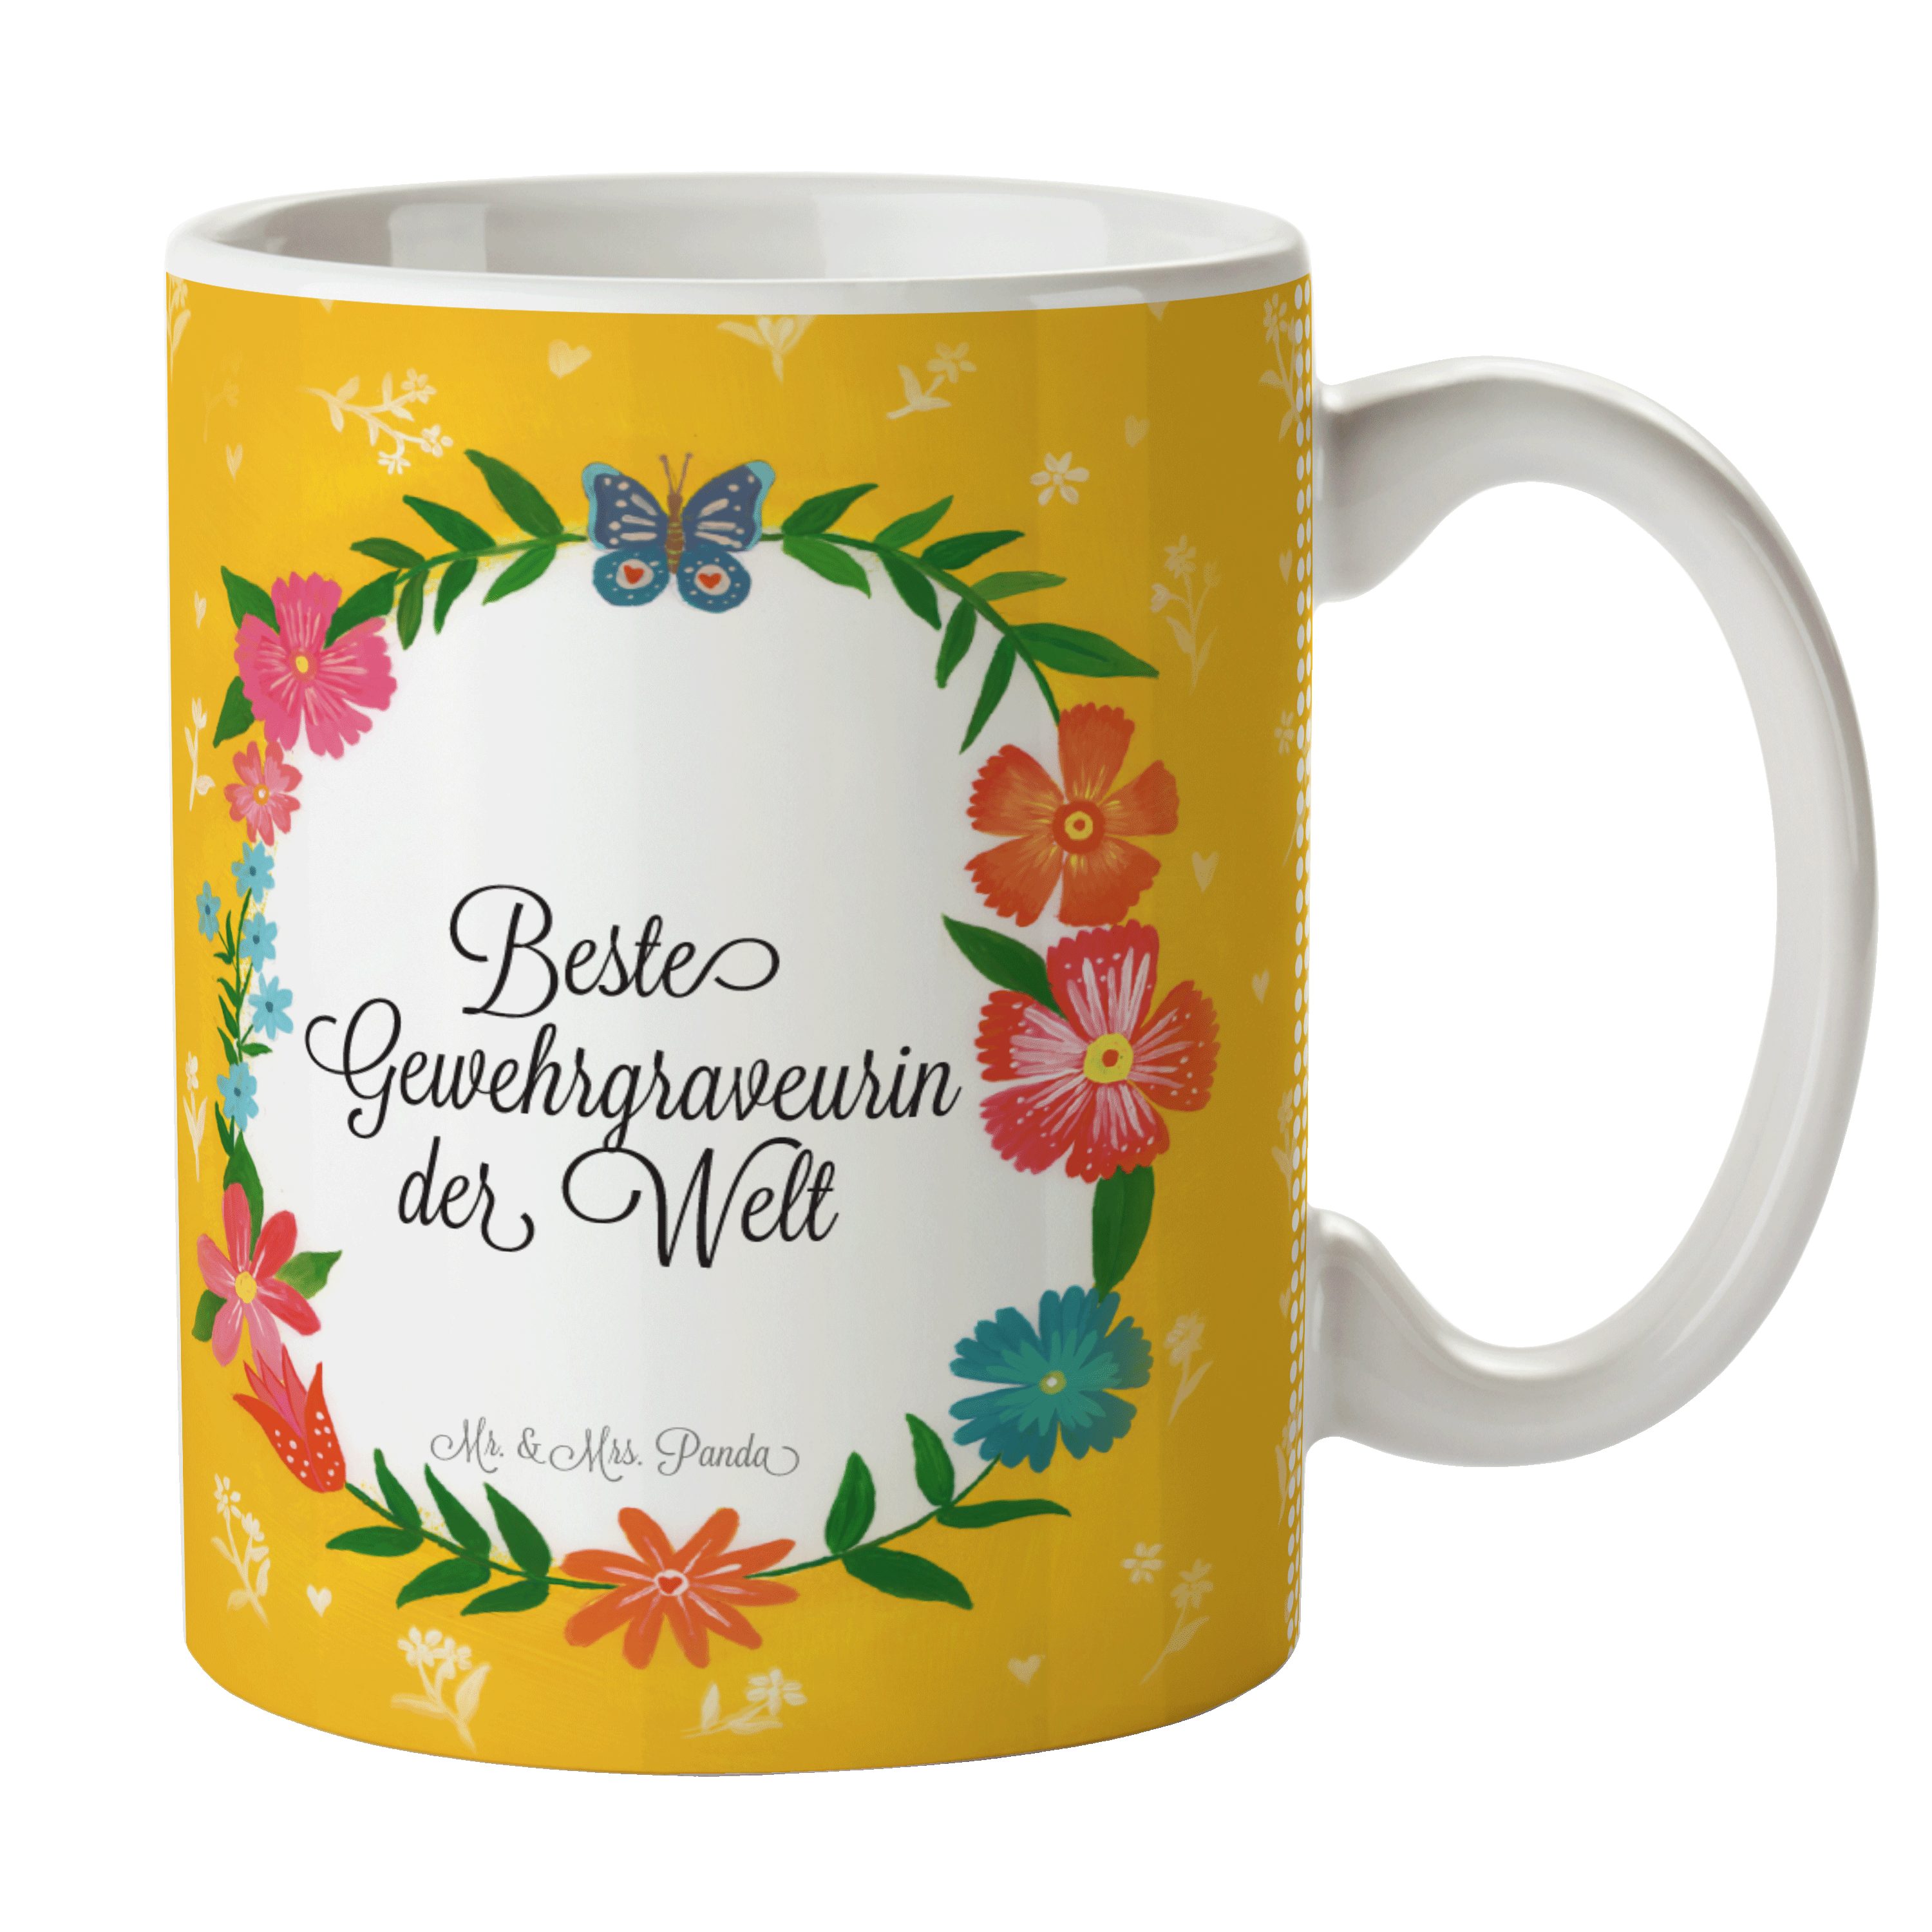 Mrs. & Kaffeetasse, - Panda Gewehrgraveurin Geschenk Keramik Geschenk, Tasse, Schenken, Re, Mr. Tasse